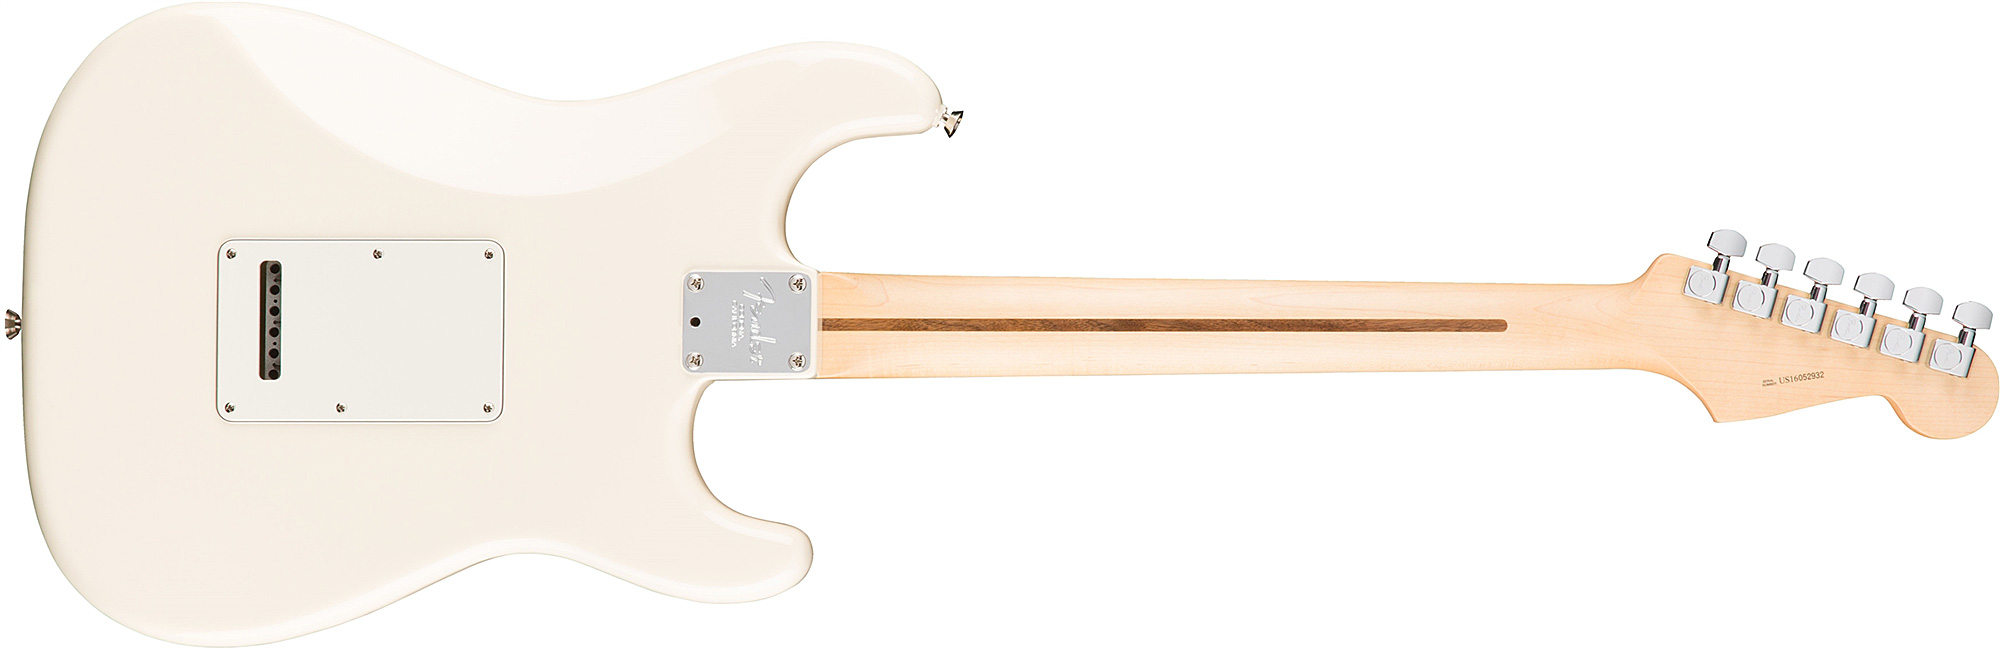 Fender Strat American Professional Lh Usa Gaucher 3s Rw - Olympic White - Linkshandige elektrische gitaar - Variation 2